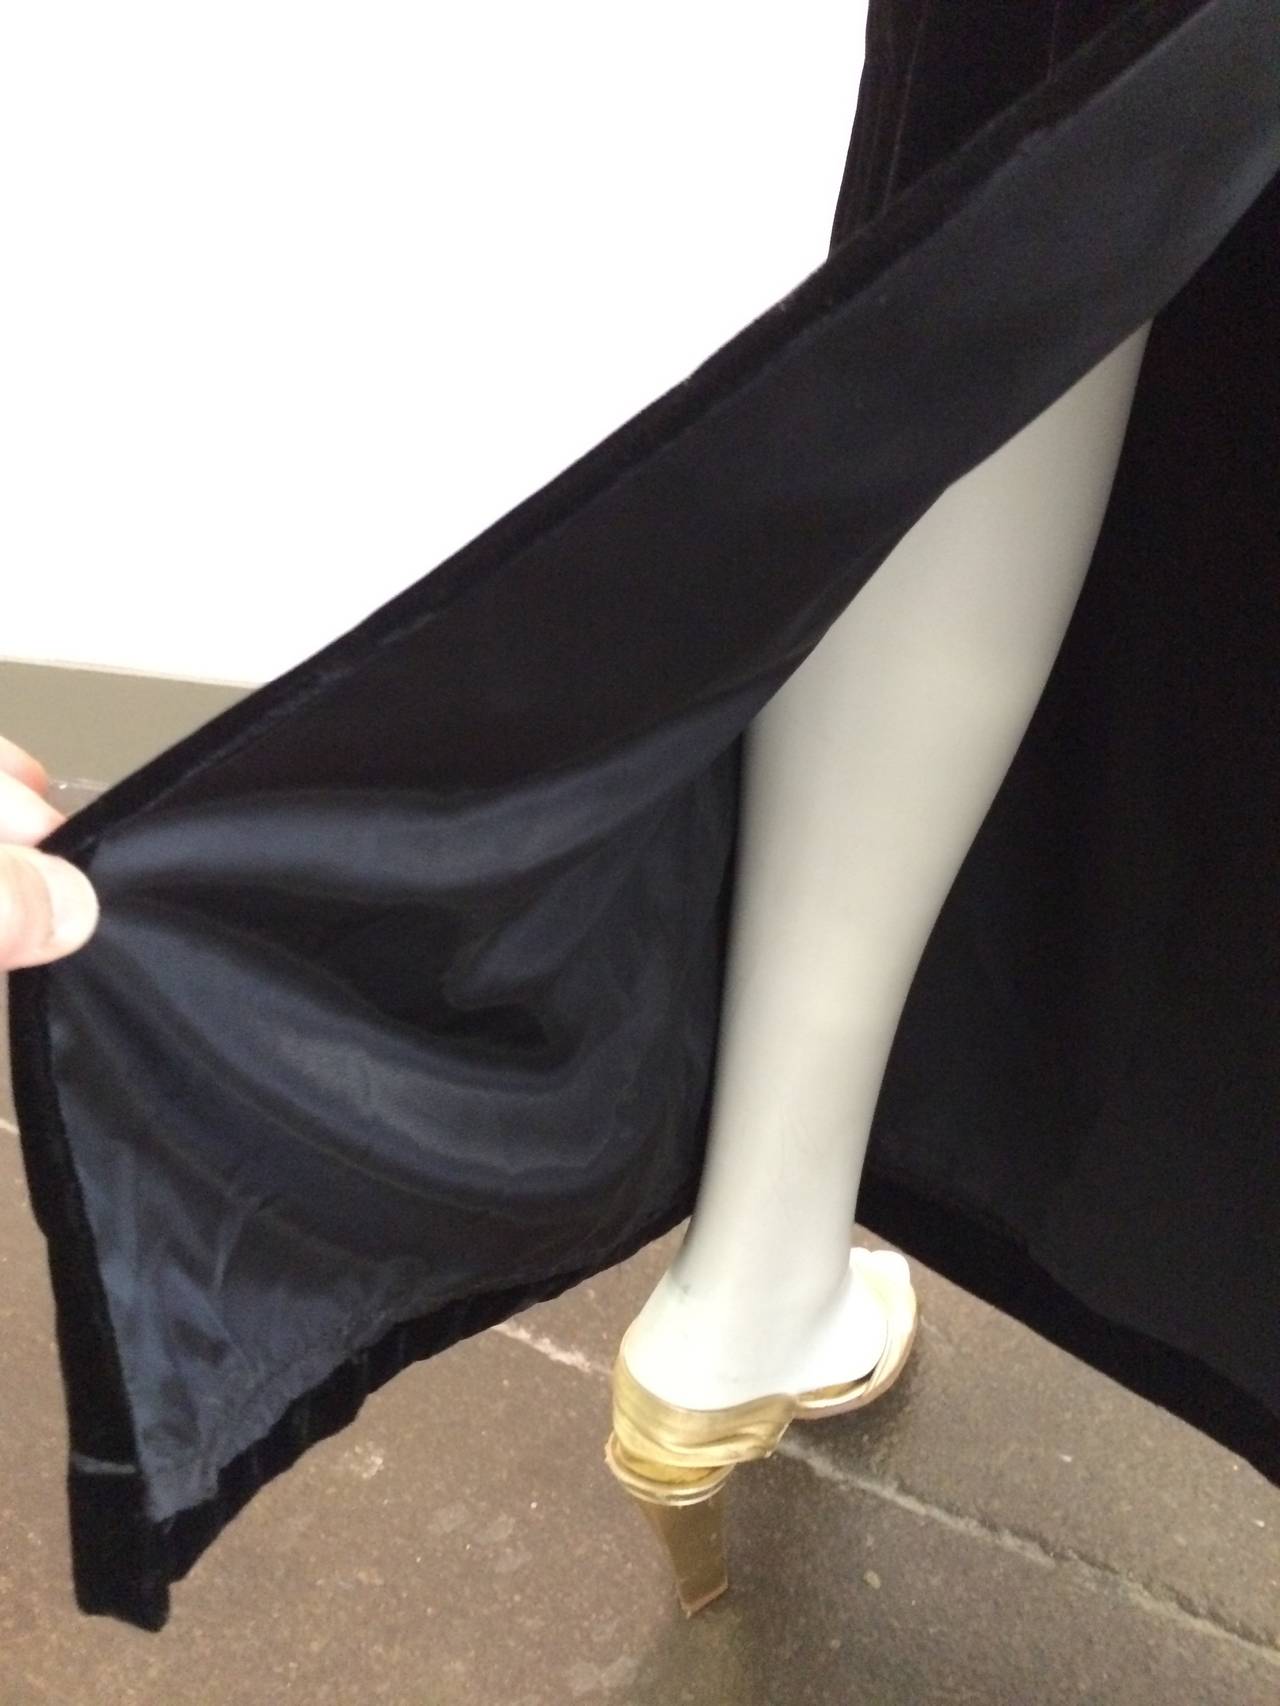 Oscar de la Renta for Sak's Fifth Avenue 90s long velvet gown. 4